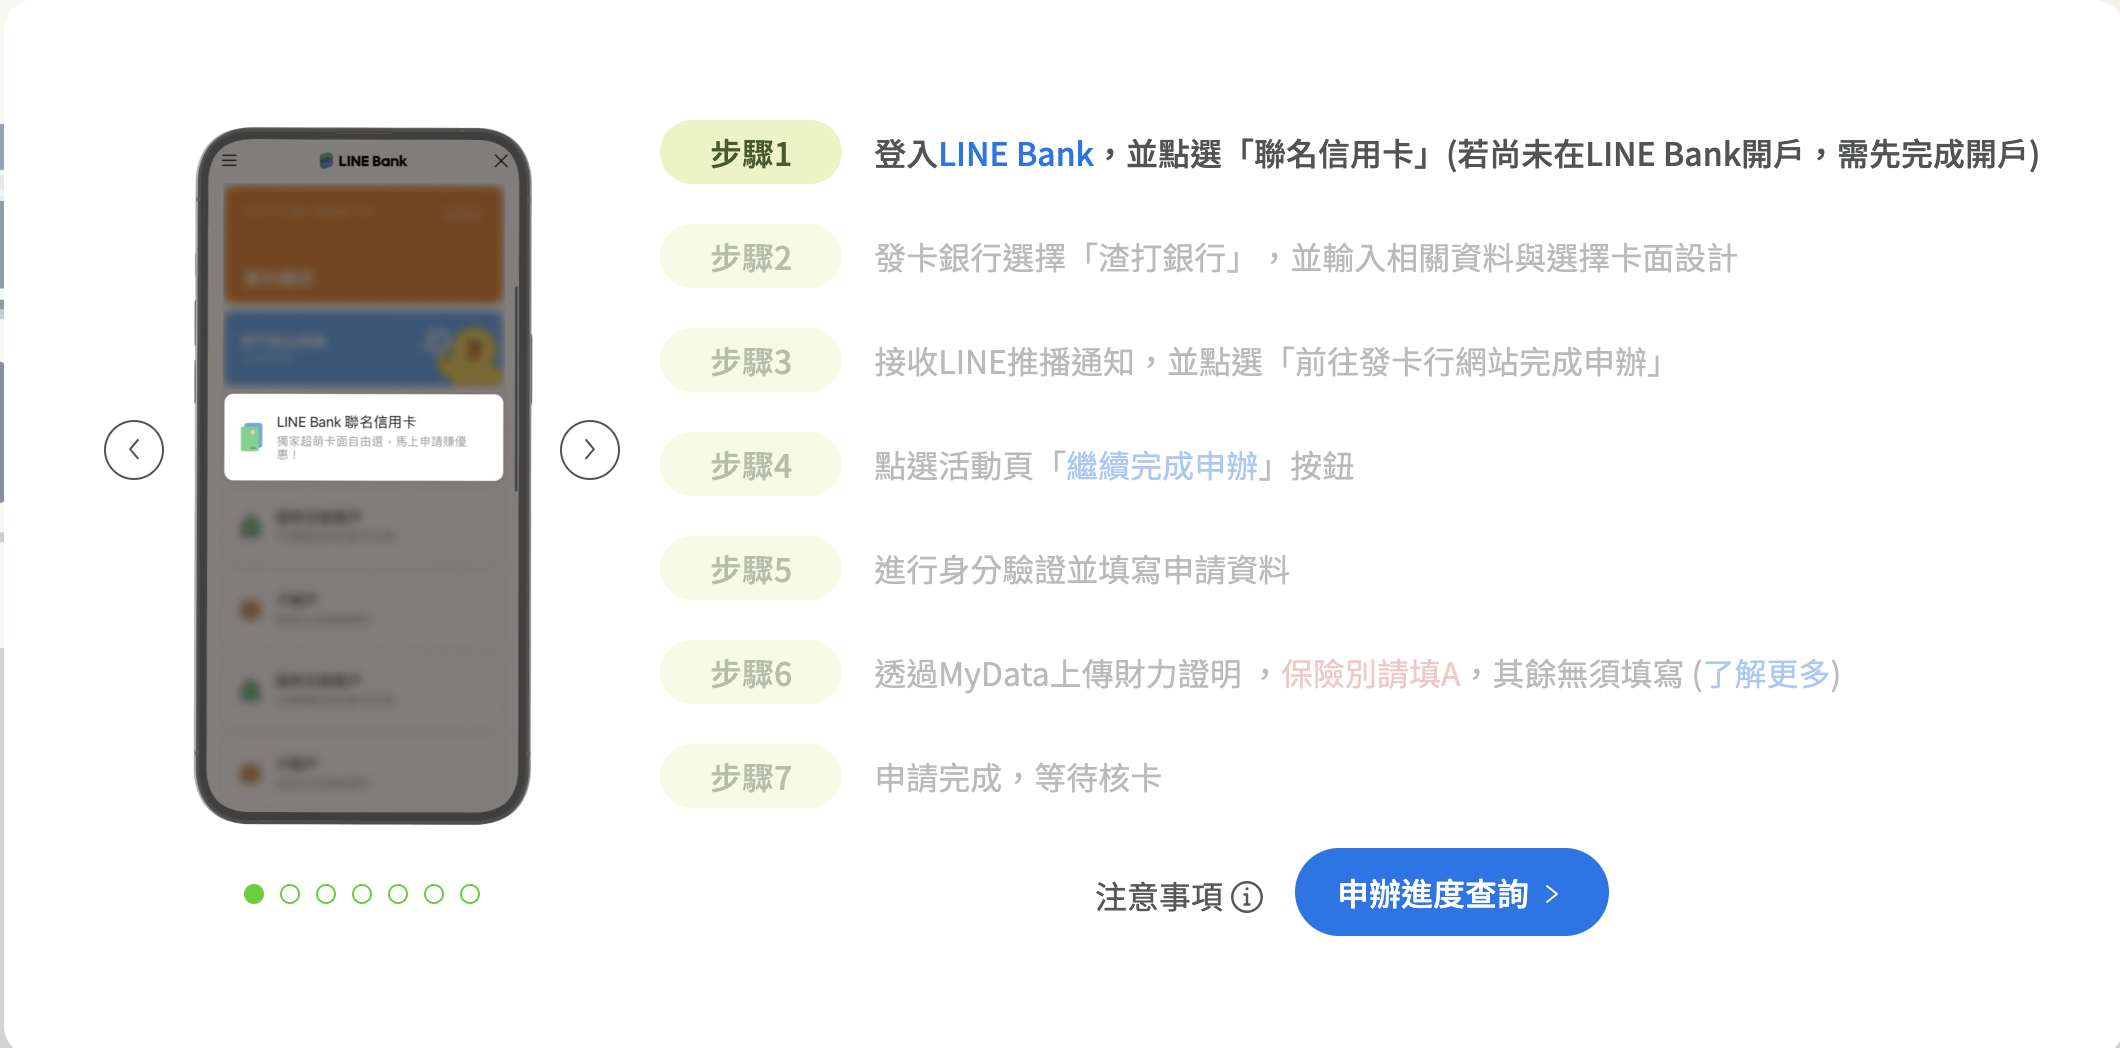 渣打 LINE Bank 聯名卡申辦流程